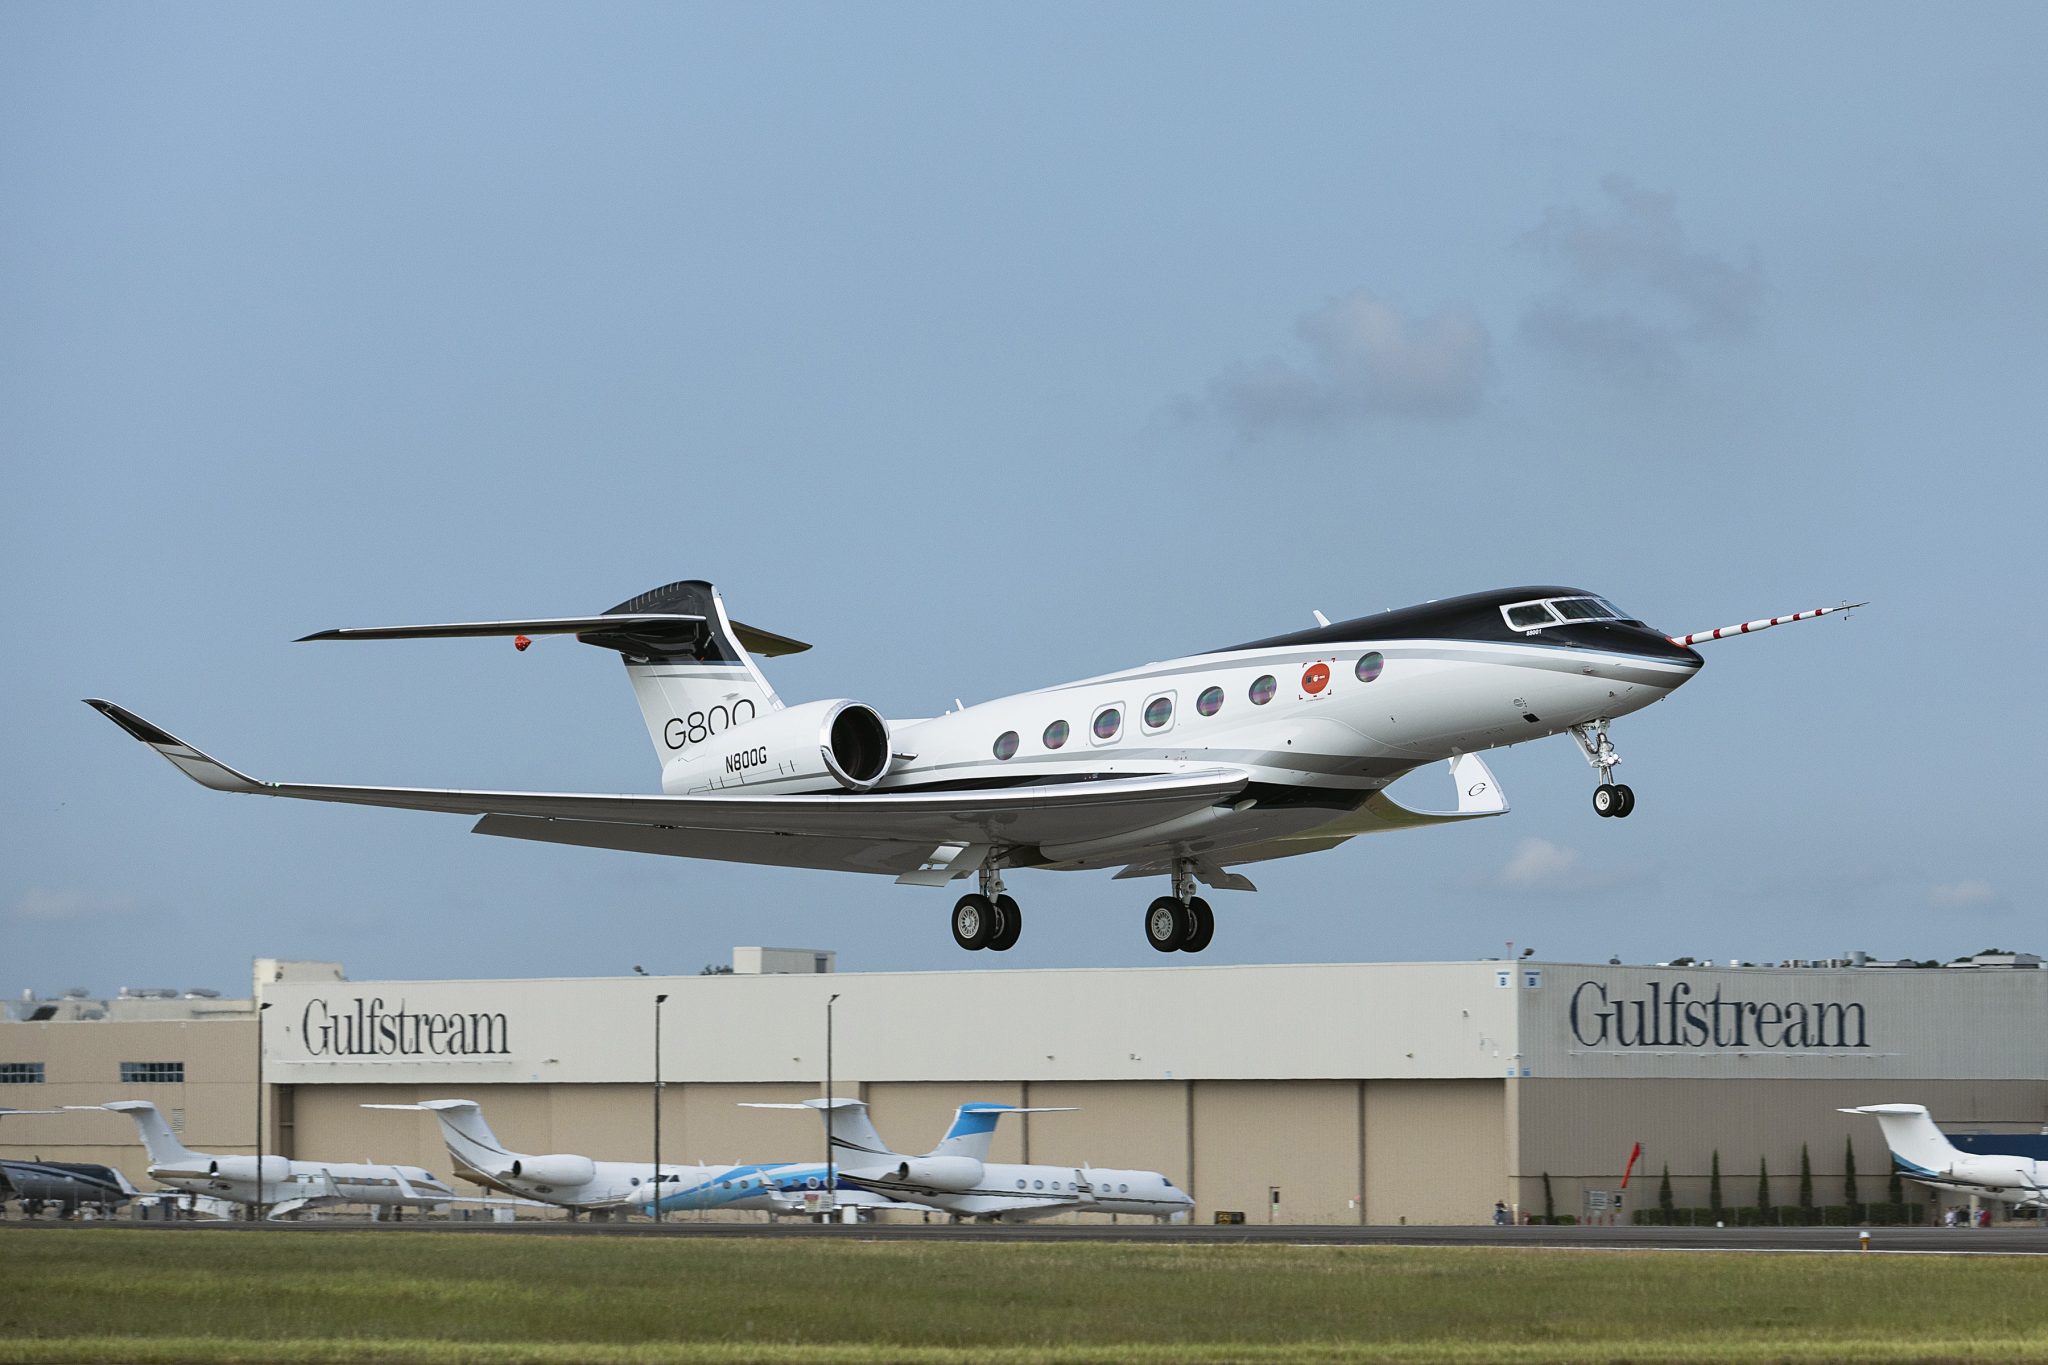 Gulfstream V - LV-IRQ, Lionel Messi (FlyZar)